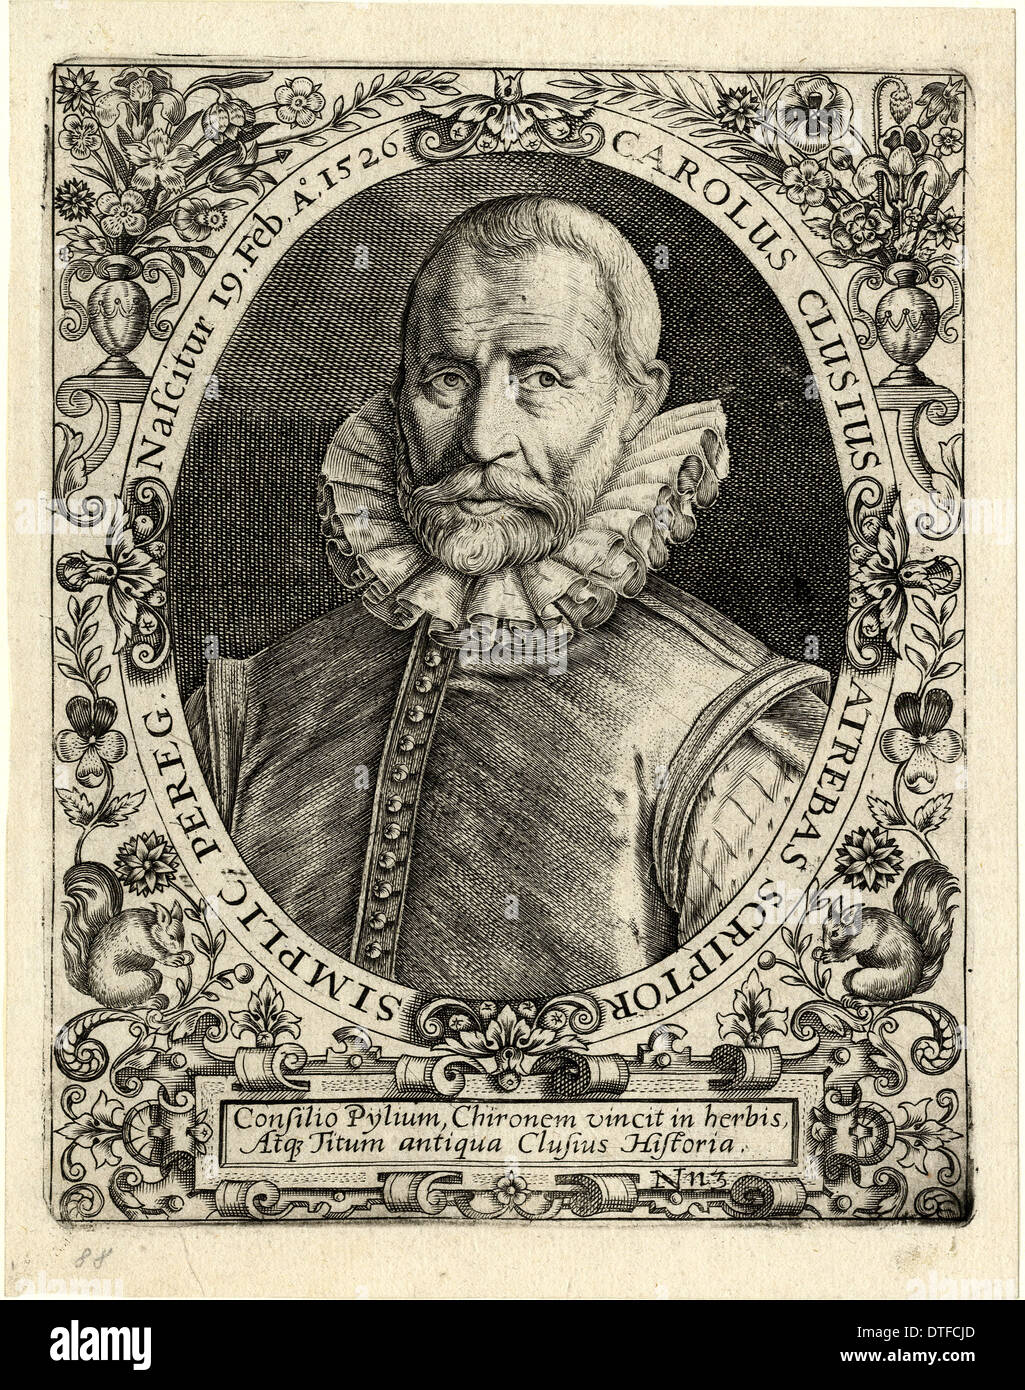 Carolus Clusius (1529-1609) Stock Photo